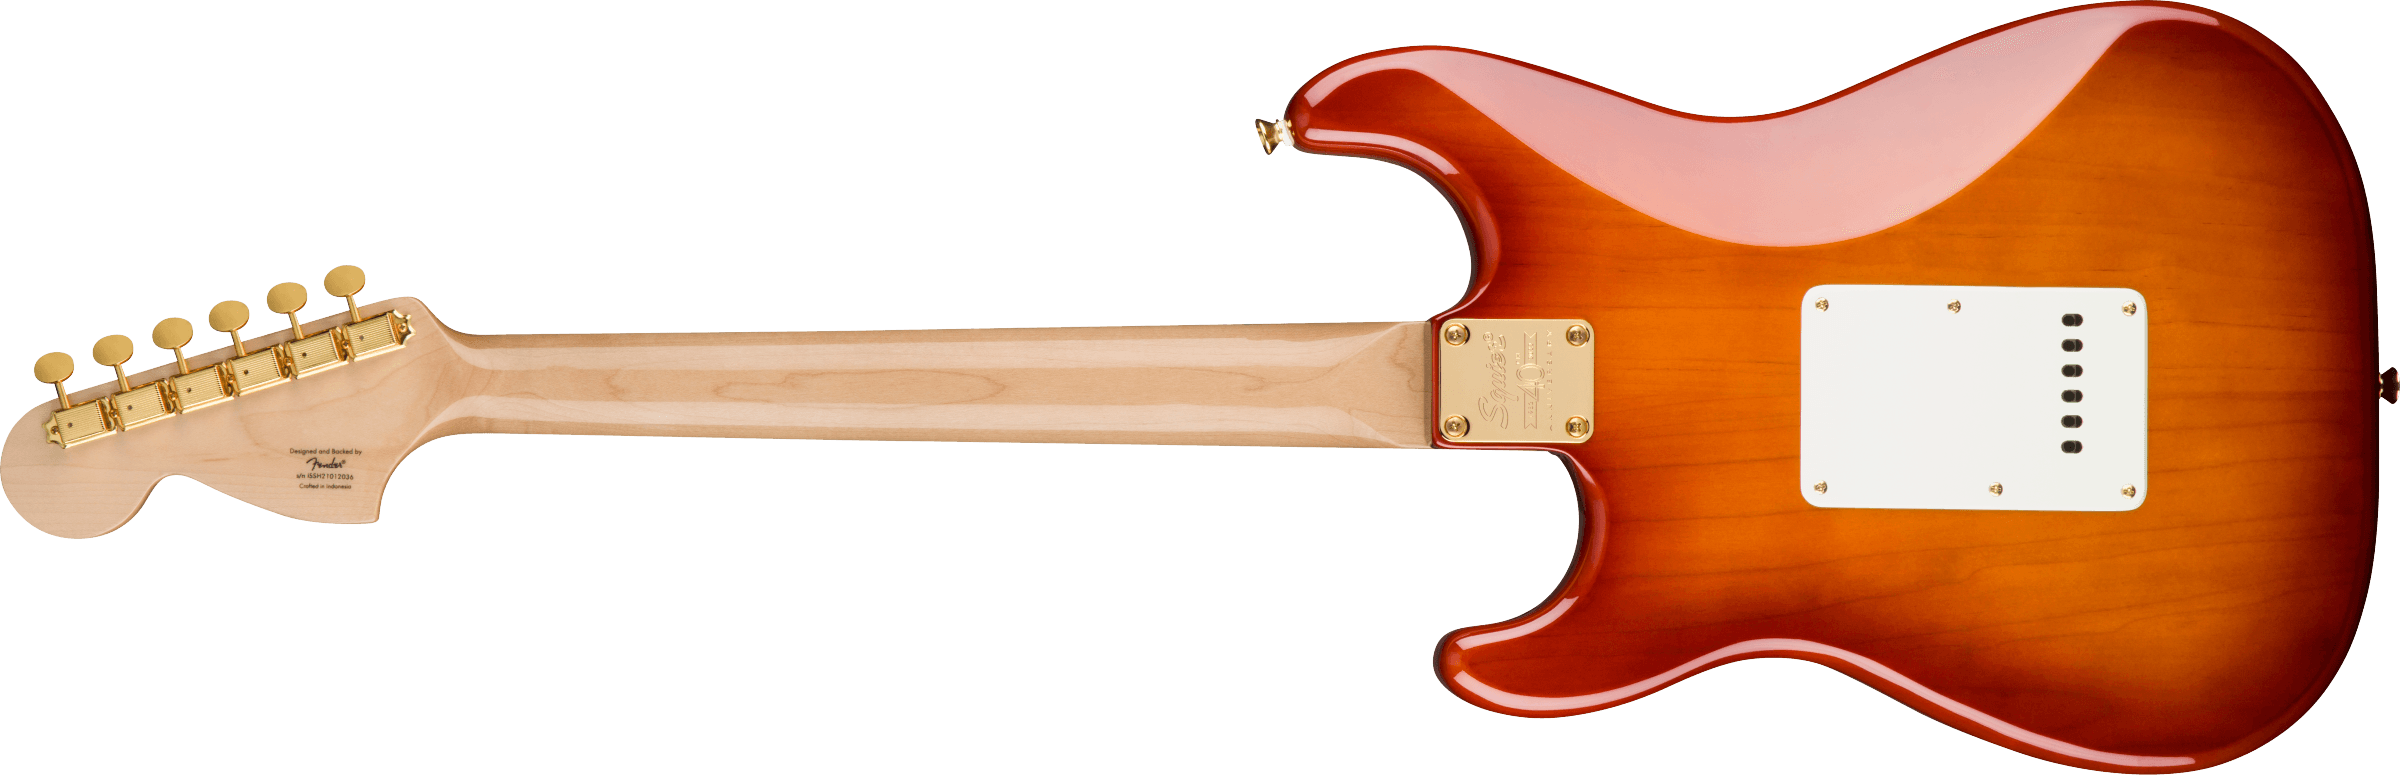 Squier 40th Anniversary Stratocaster, Gold Edition, Sienna Sunburst